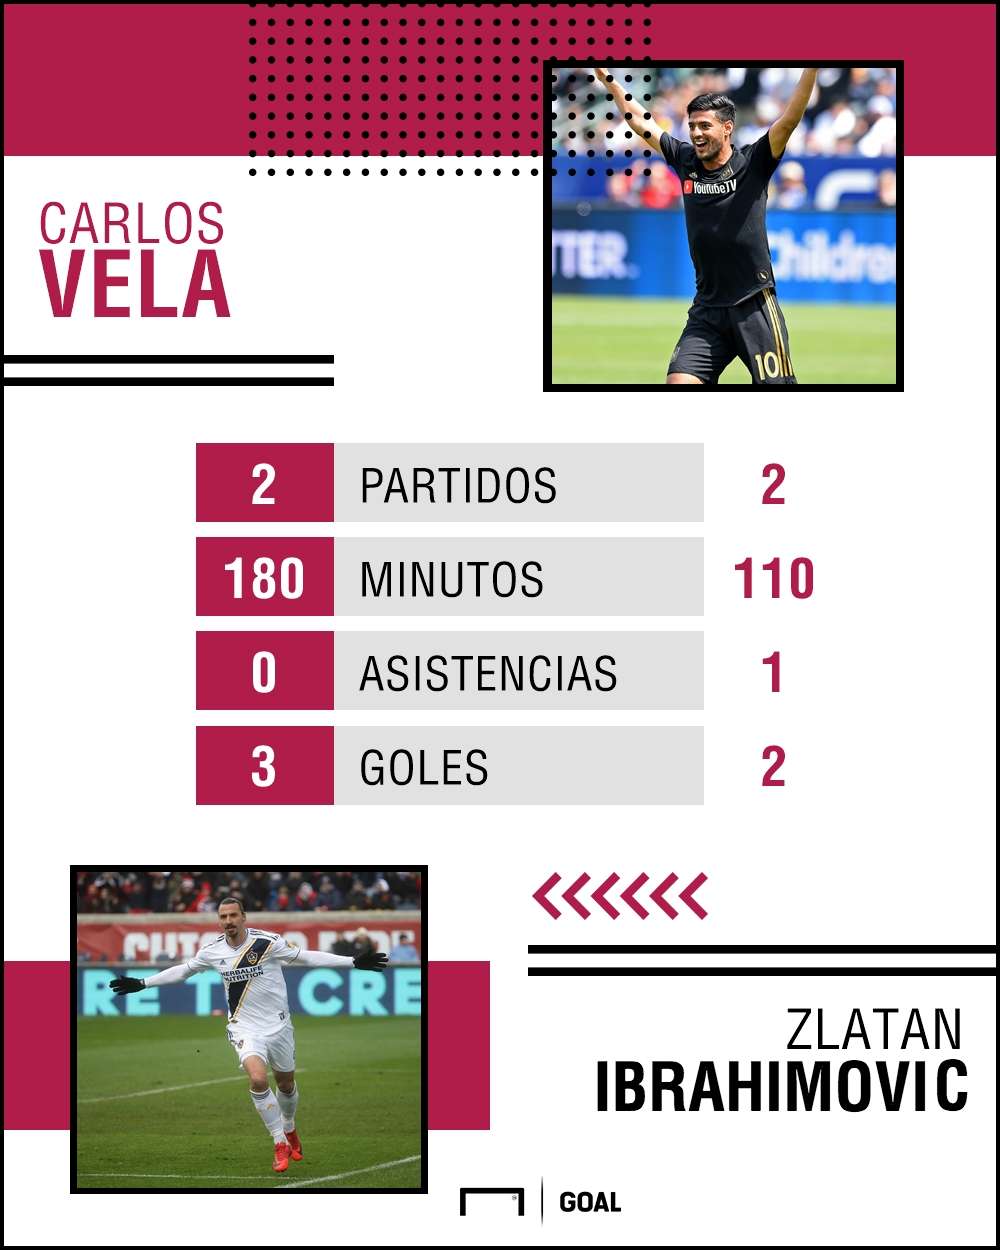 Carlos Vela vs Zlatan Ibrahimovic